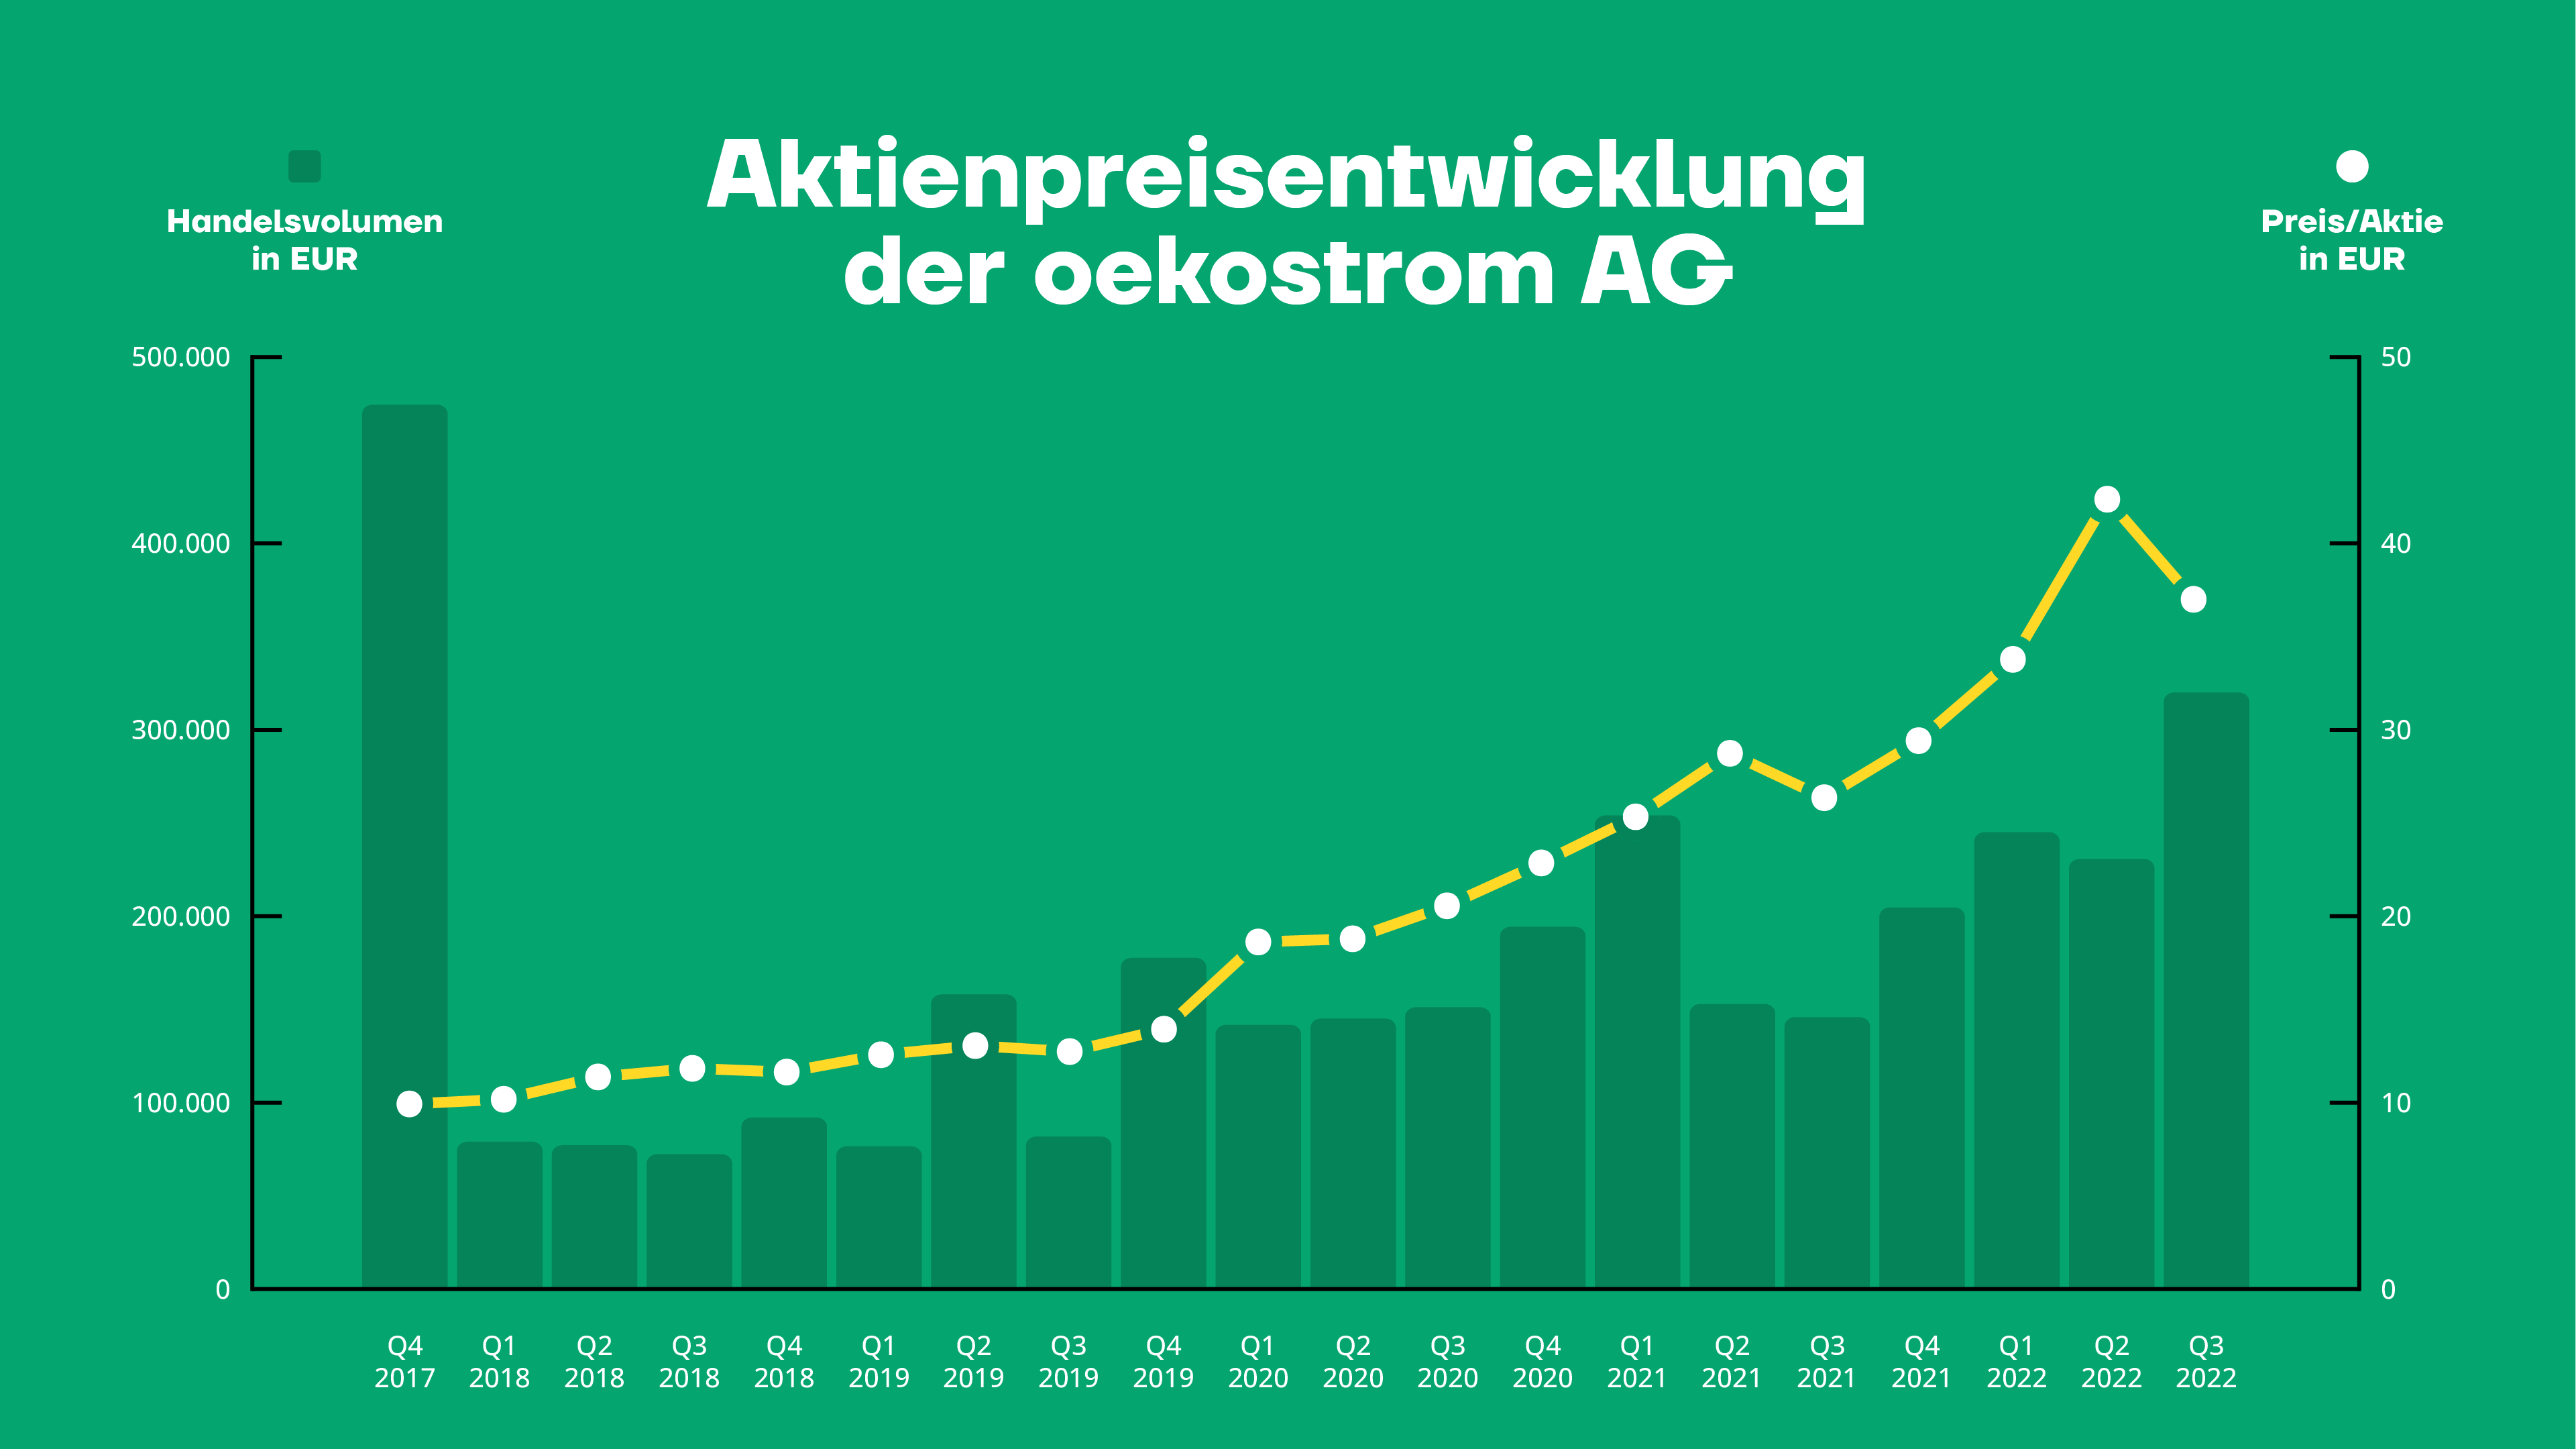 Aktienpreisentwicklung der oekostrom AG